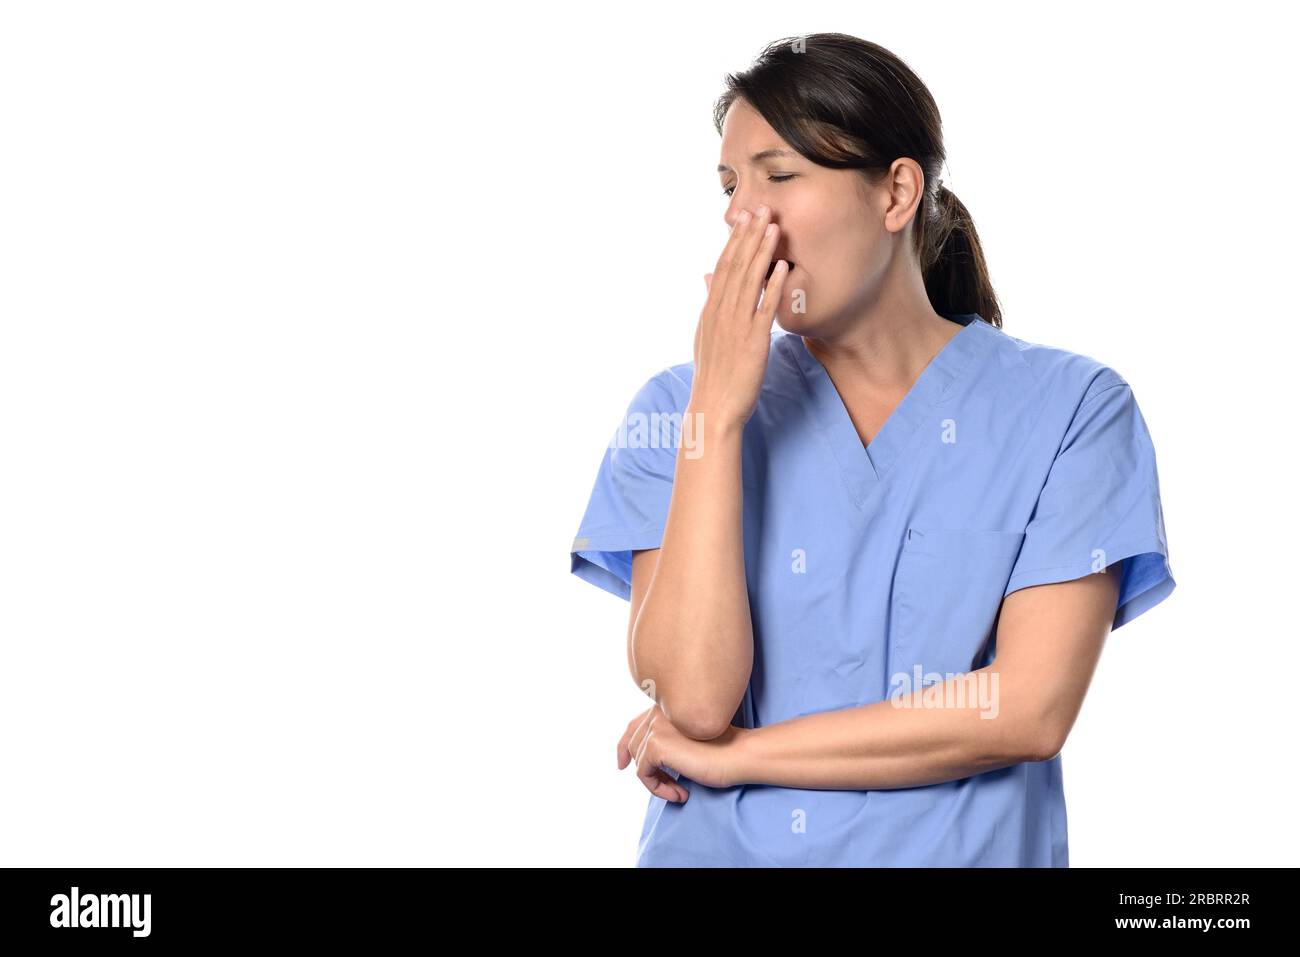 Erschöpfte, attraktive Ärztin oder Krankenschwester in blauen Kissen, die mit ihrer Hand an ihren Mund gähnte, einer langen, ermüdenden Schicht, isoliert auf weiß Stockfoto